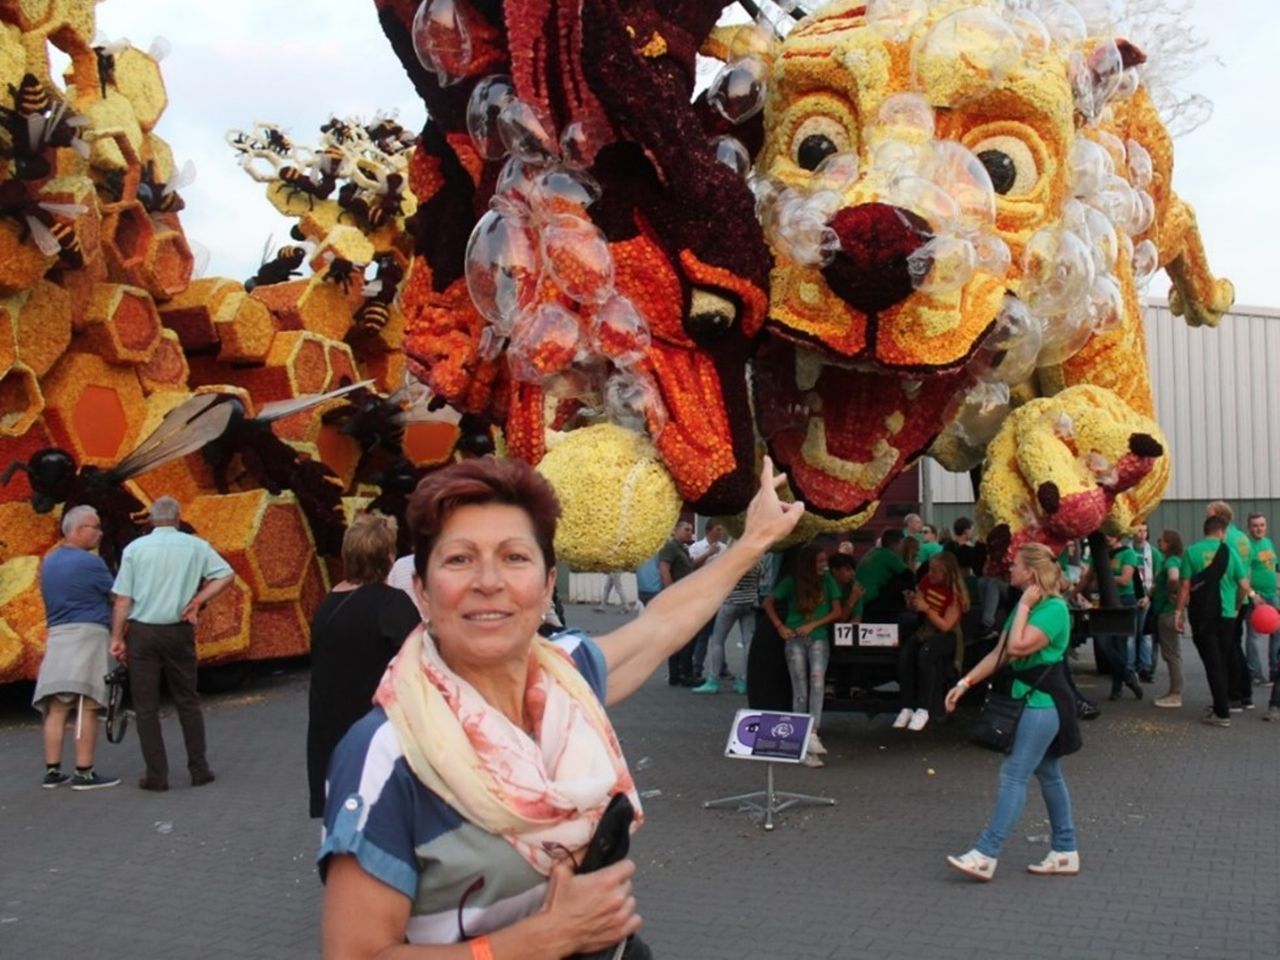 Bloemencorso Zundert — крупнейший парад цветов | Цена 500€, отзывы, описание экскурсии